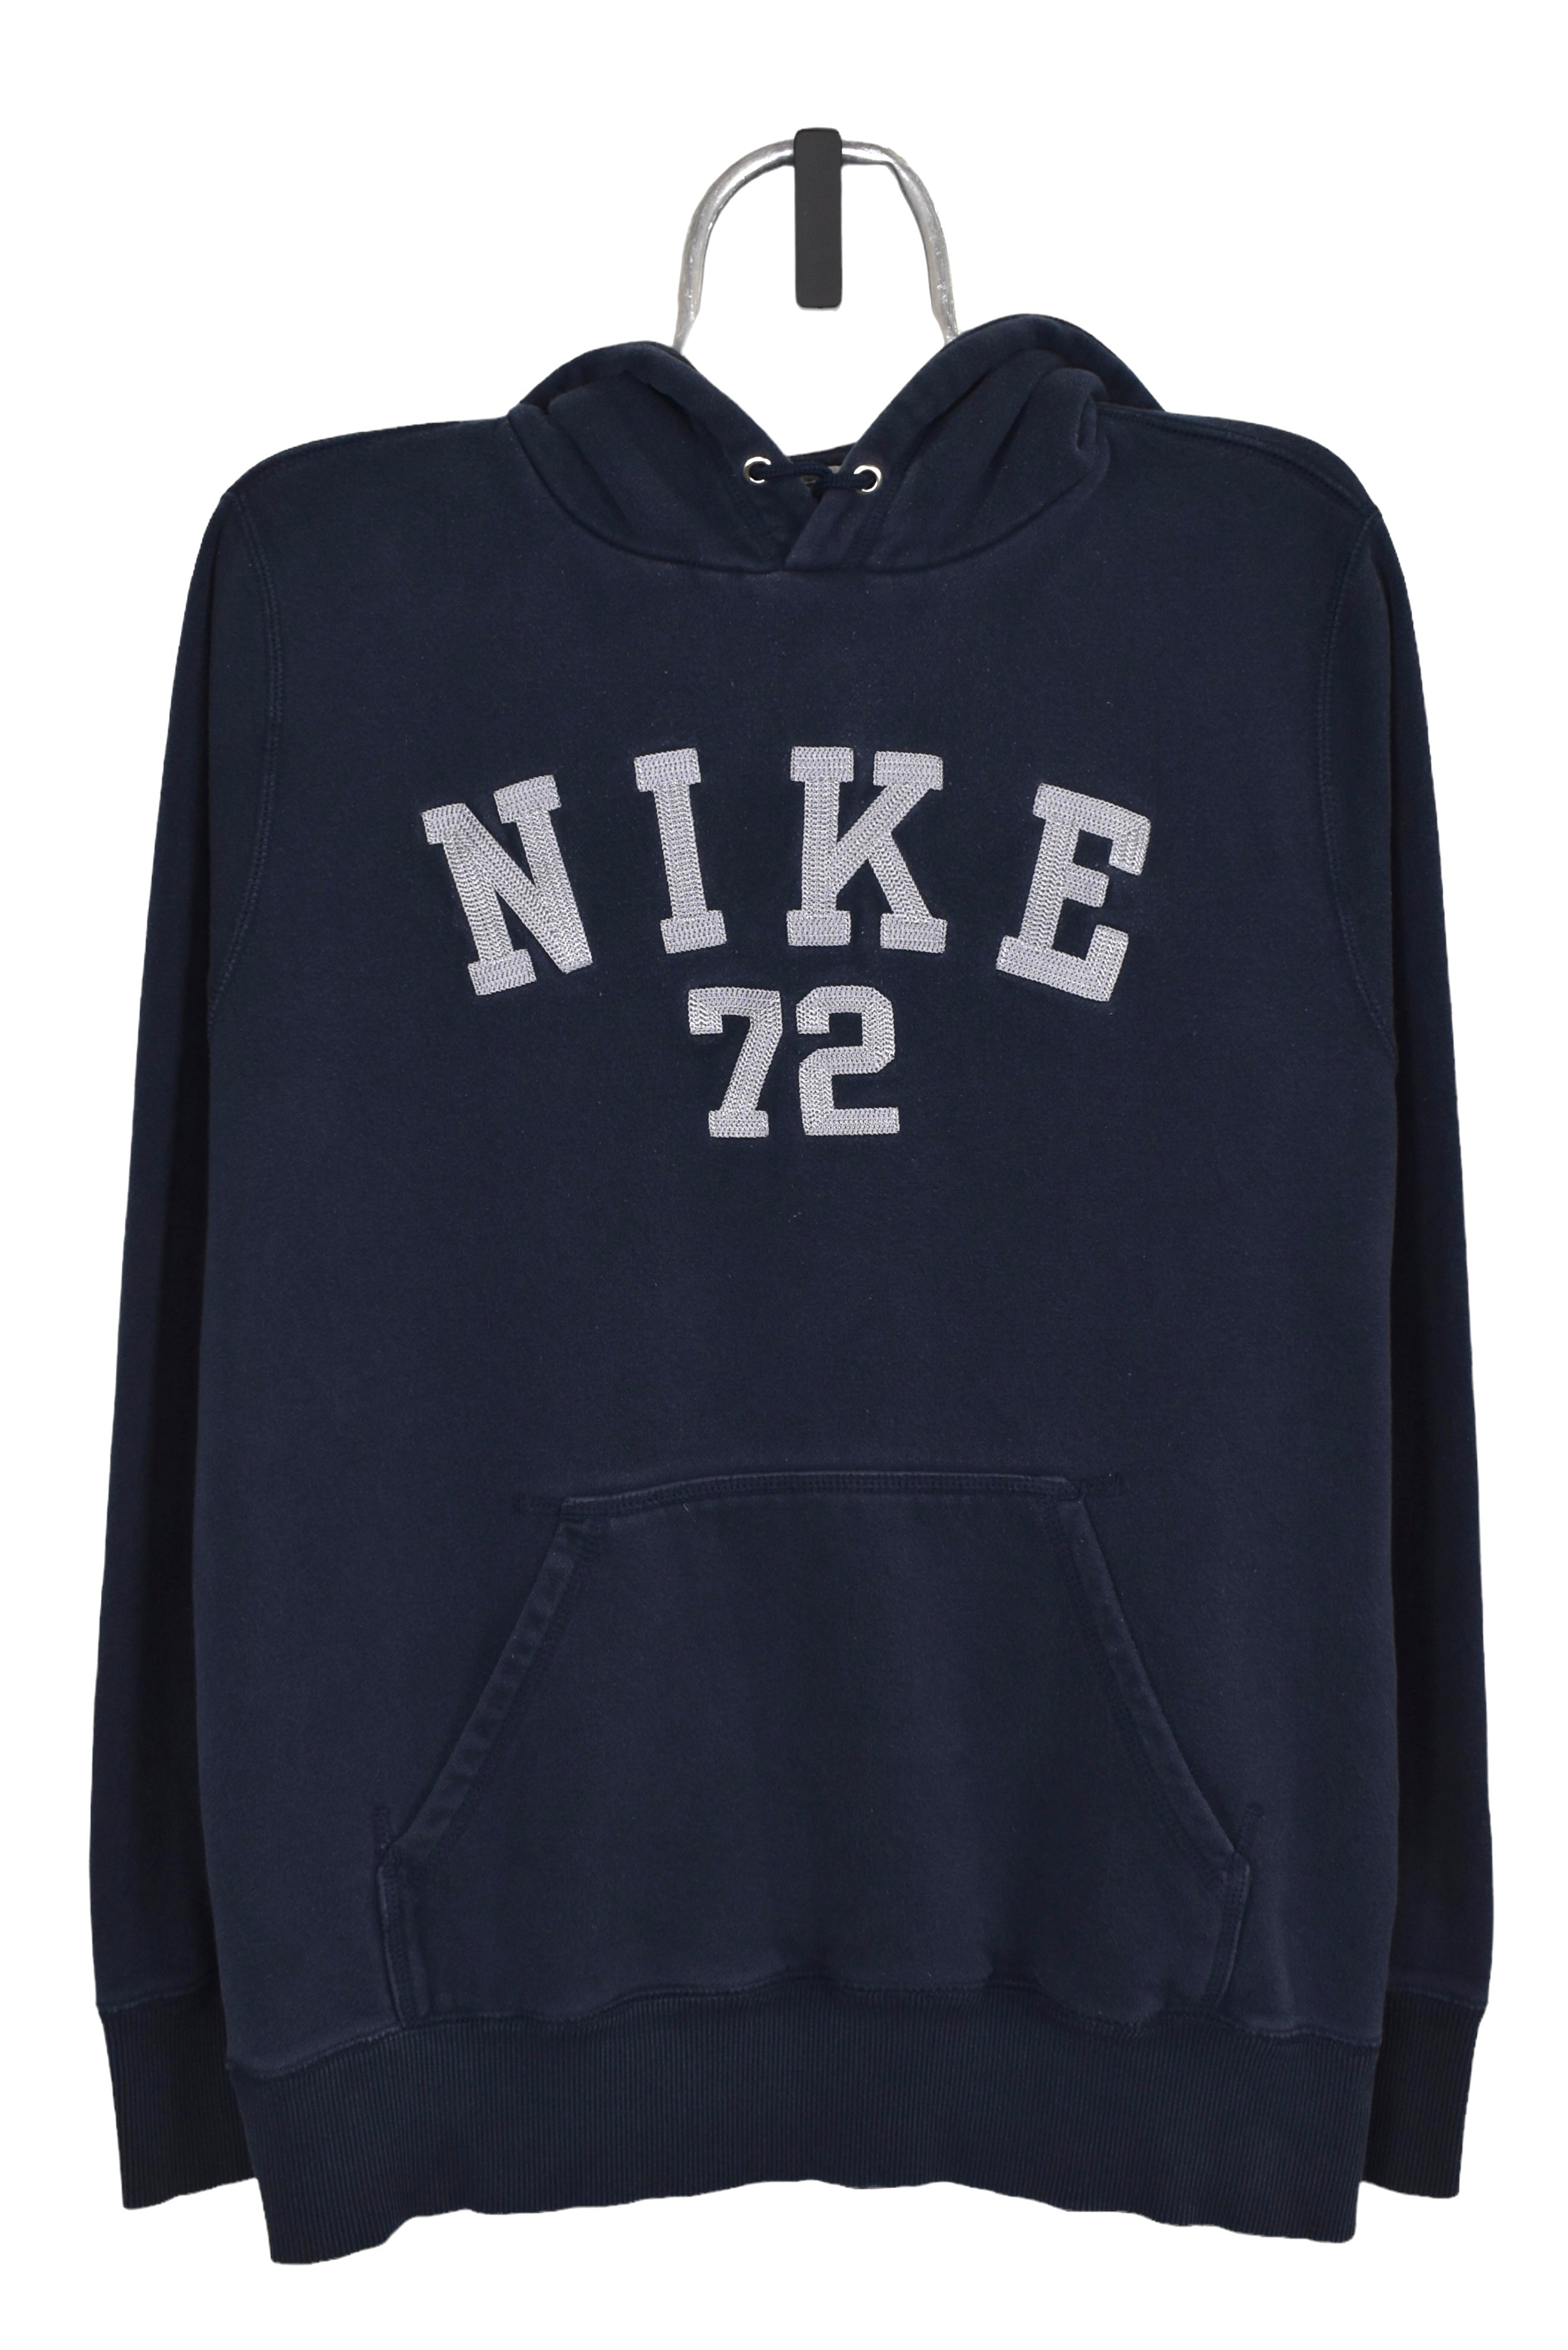 Vintage Nike hoodie (L), navy embroidered sweatshirt